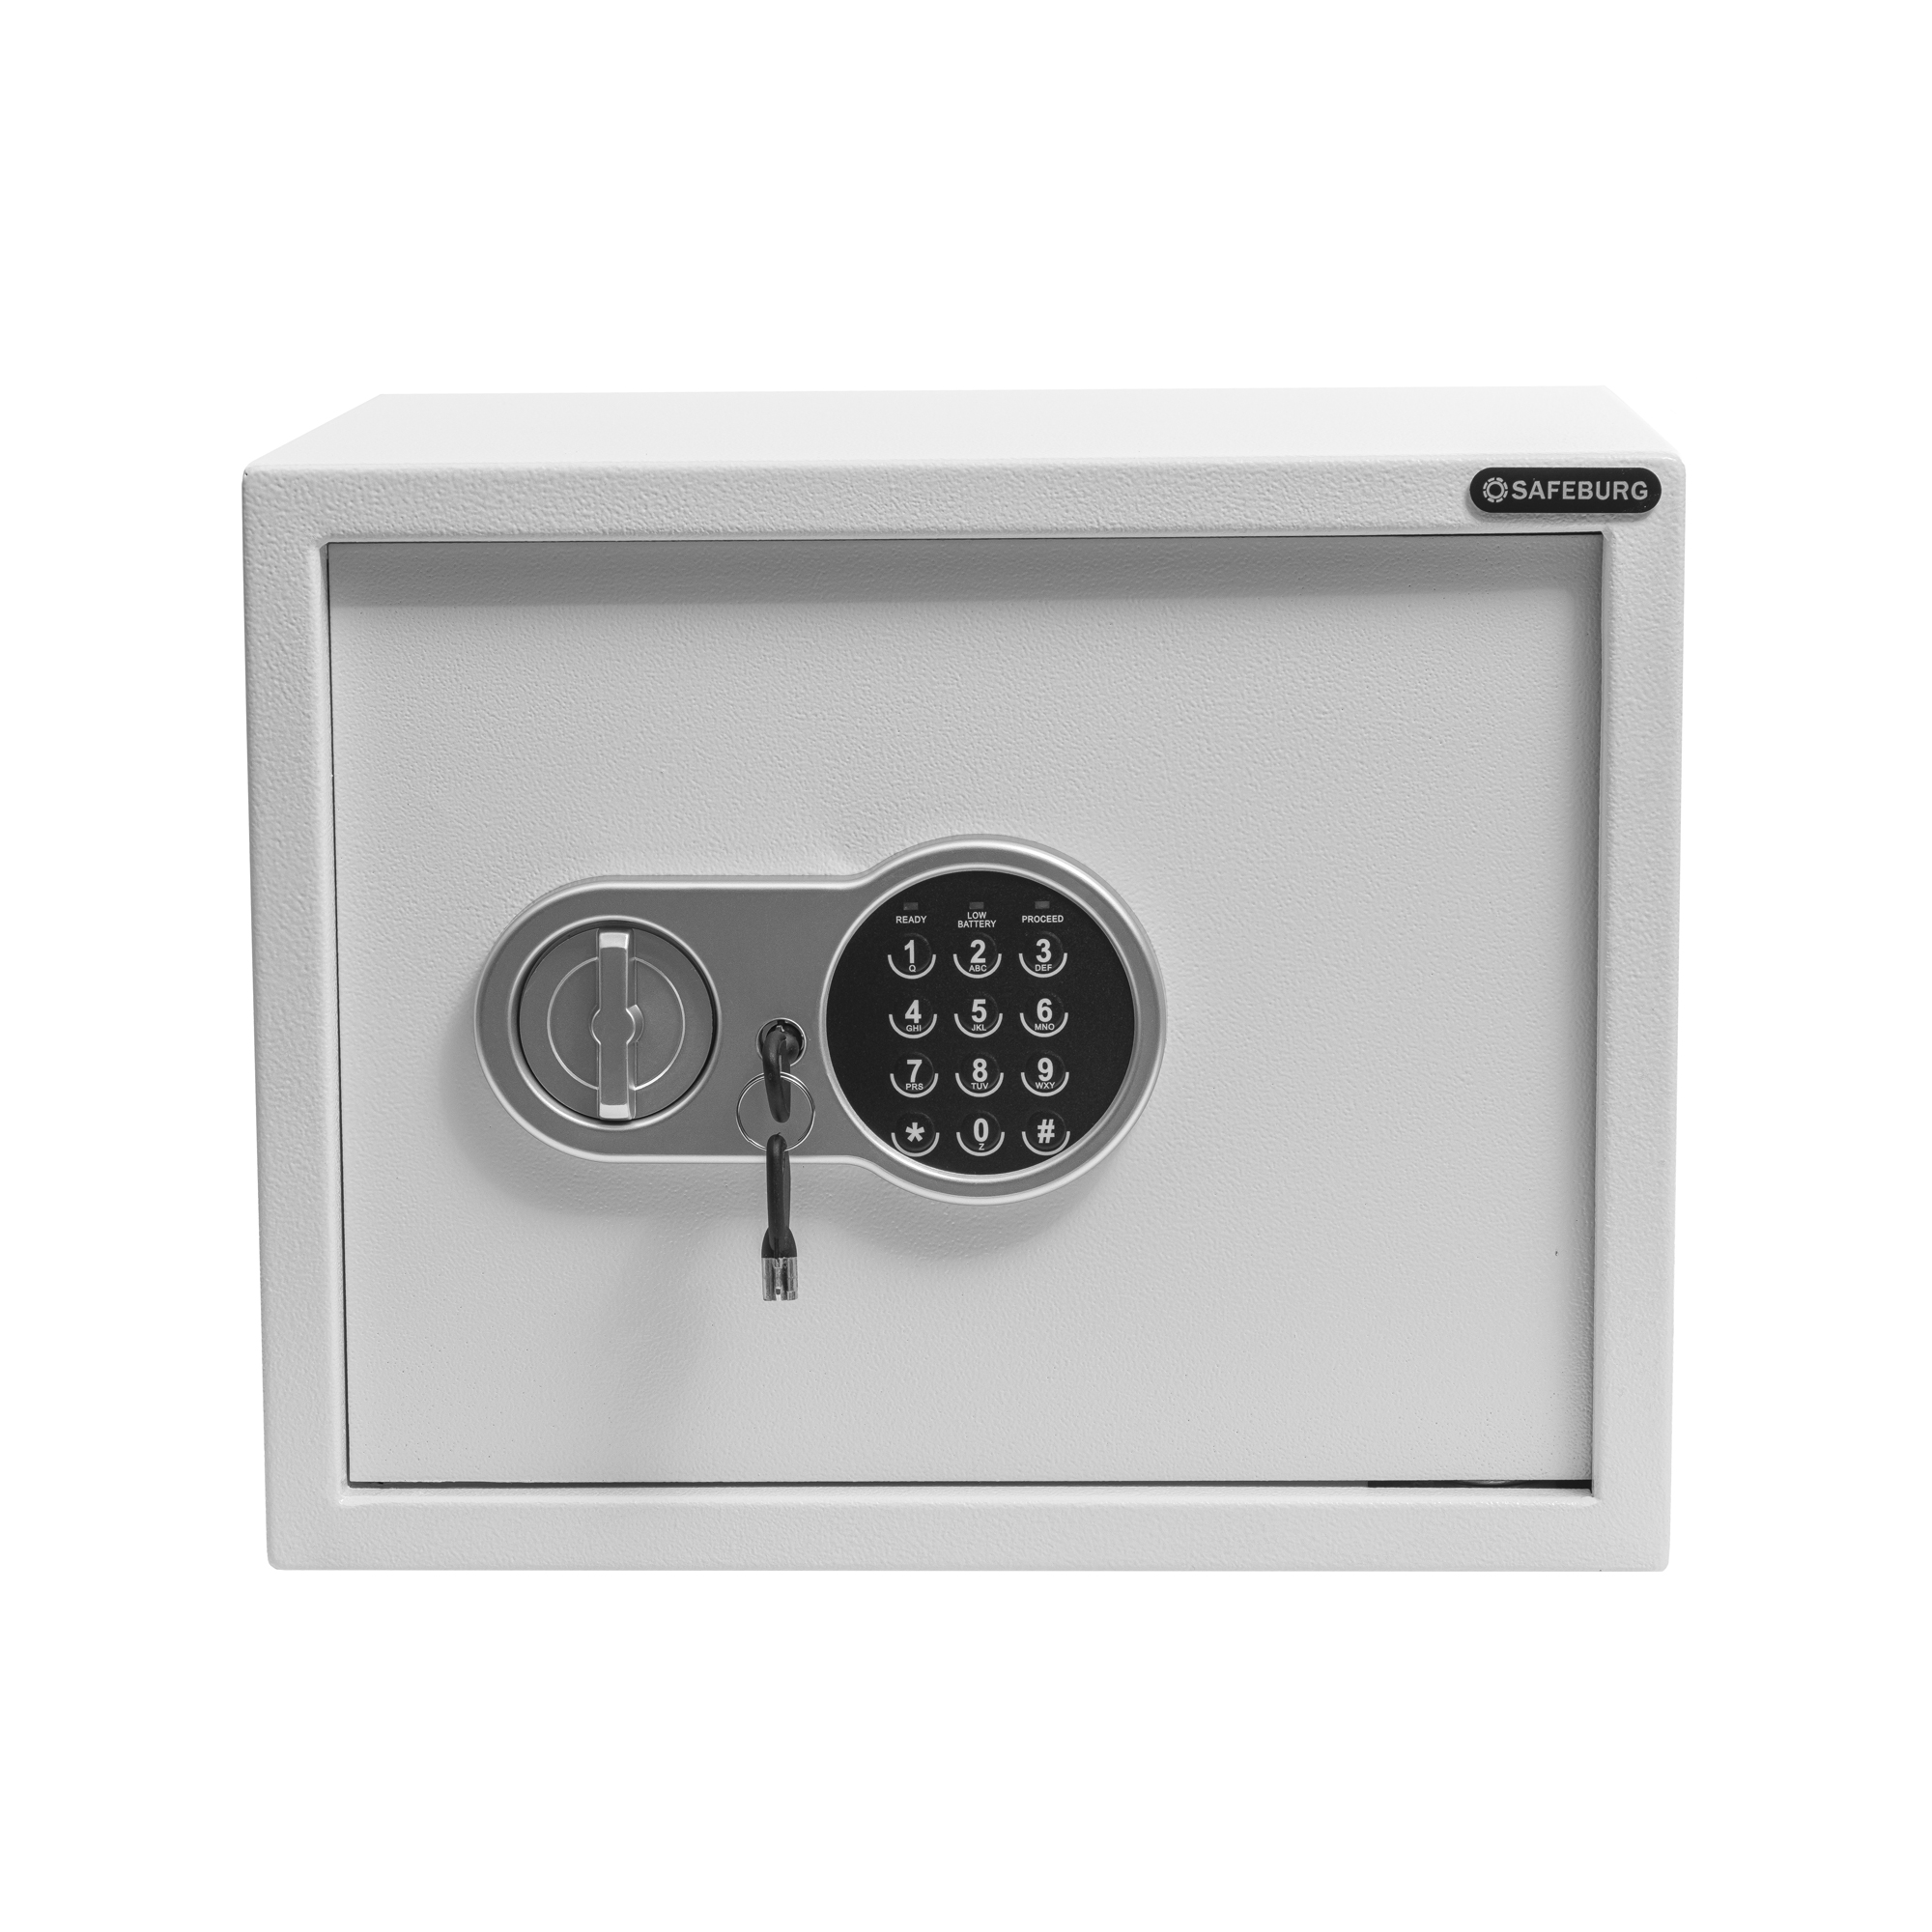 фото Сейф safeburg sb-300 white, сейф для денег и документов с электронным кодовым замком